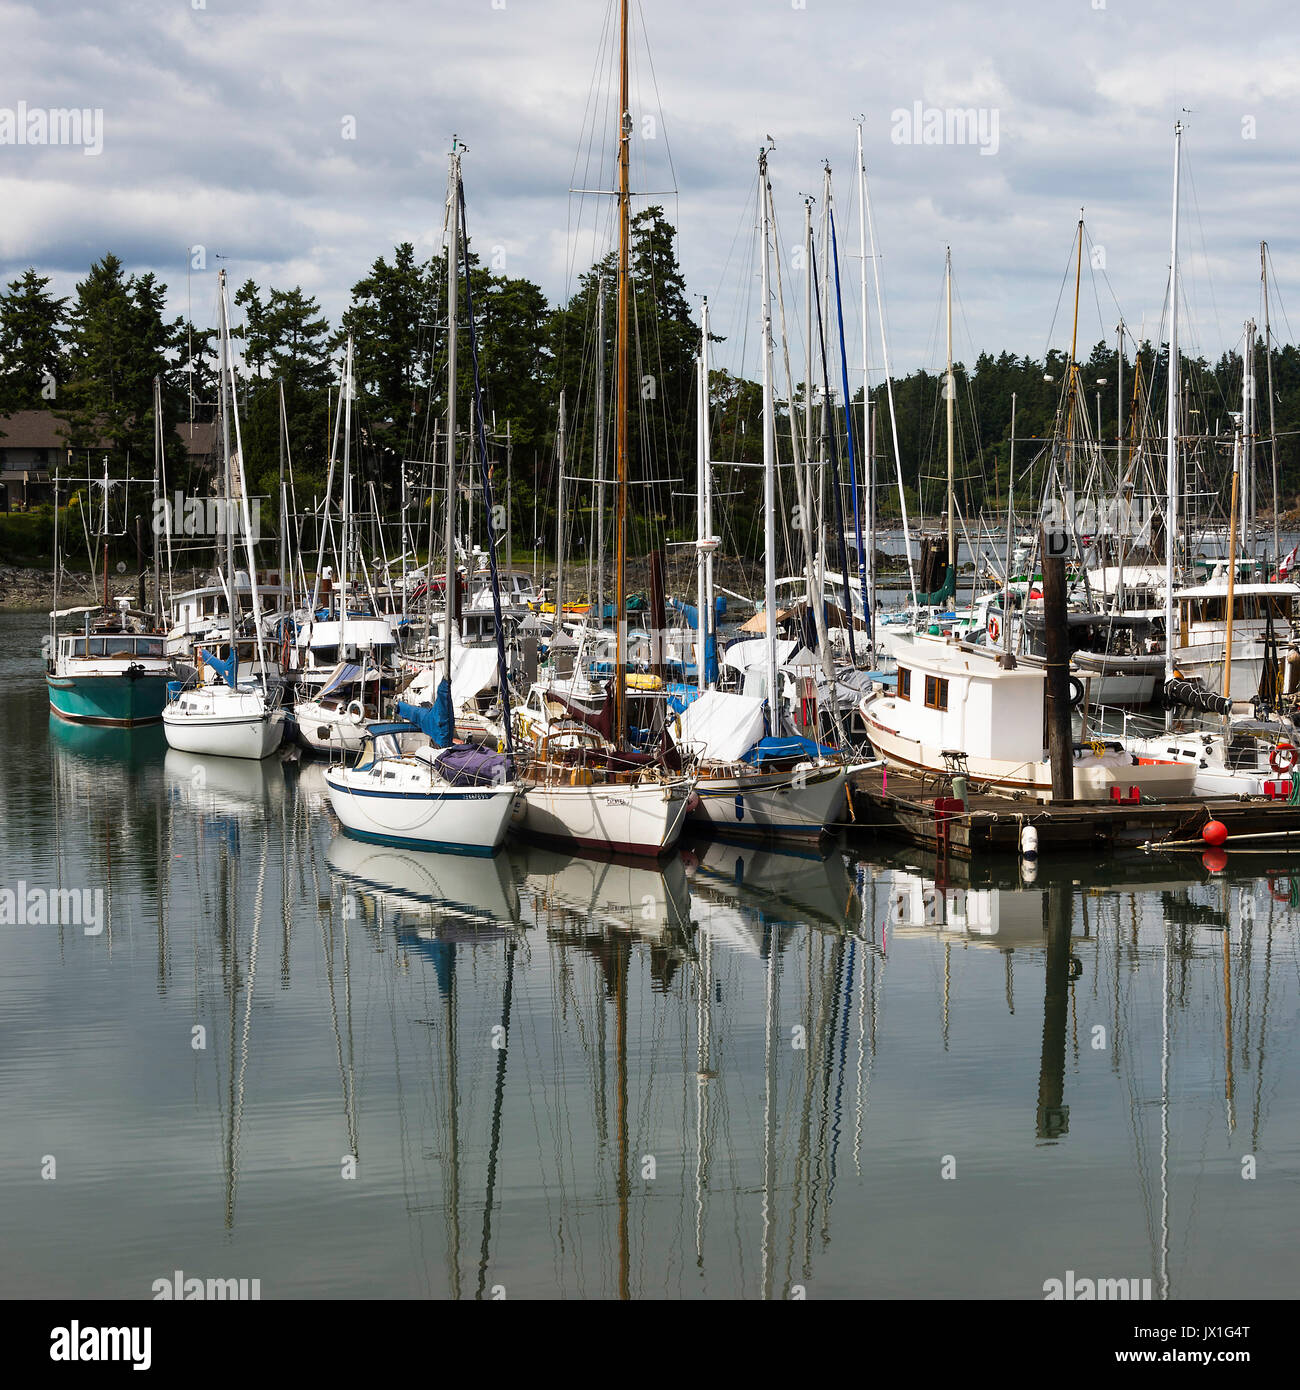 Comme miroir d'images de yachts et bateaux à quai dans une marina à Tsehum Harbour, près de Victoria, sur l'île de Vancouver, British Columbia Canada Banque D'Images